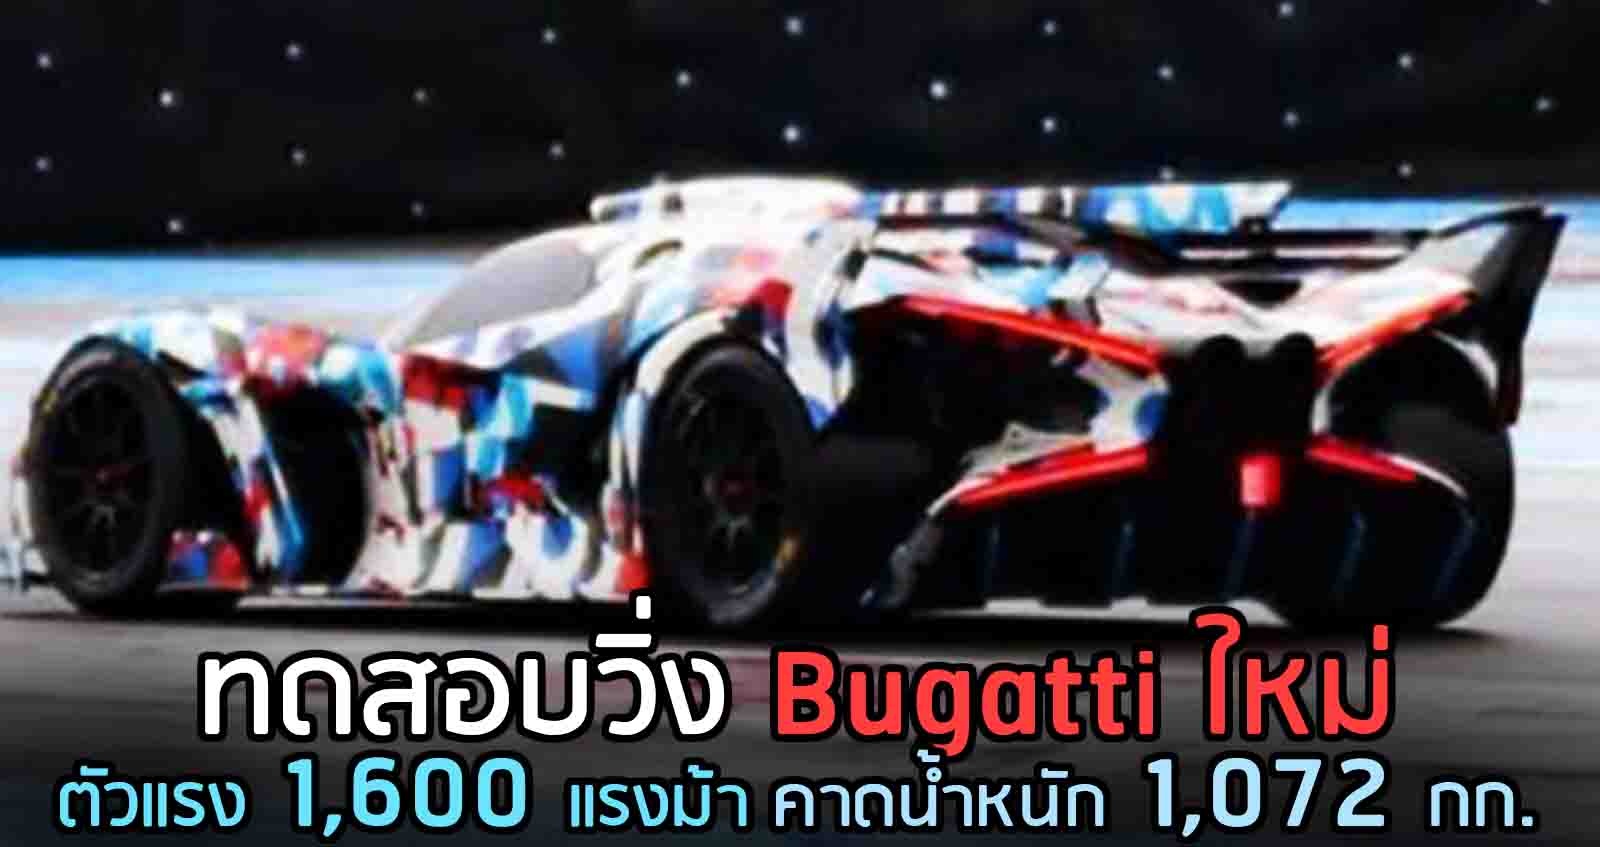 ทดสอบวิ่ง Bugatti ใหม่ ตัวแรง 1,600 แรงม้า คาดน้ำหนัก 1,072 กก.